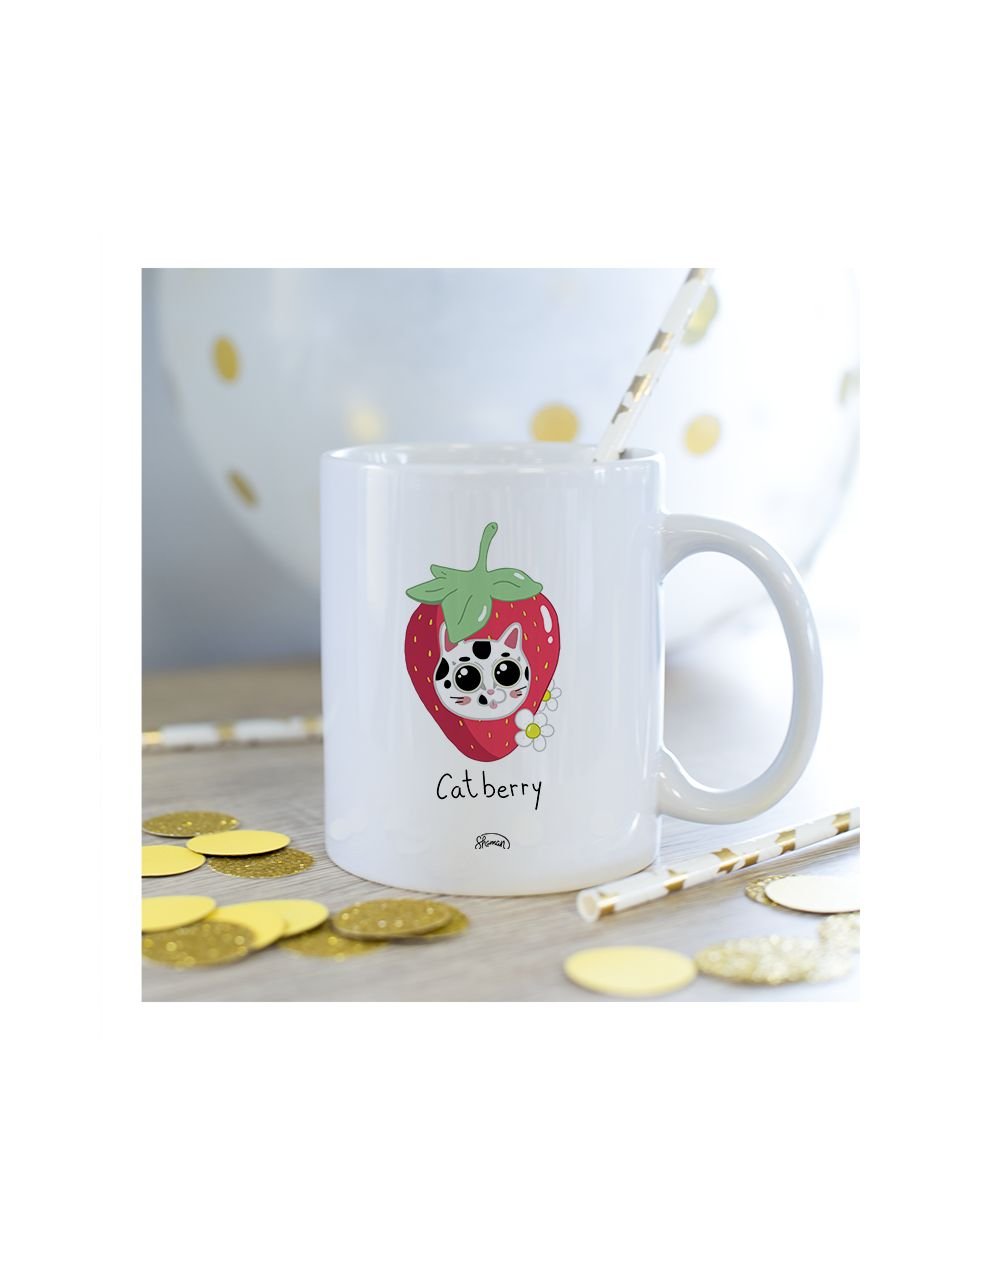 Mug "Catberry"